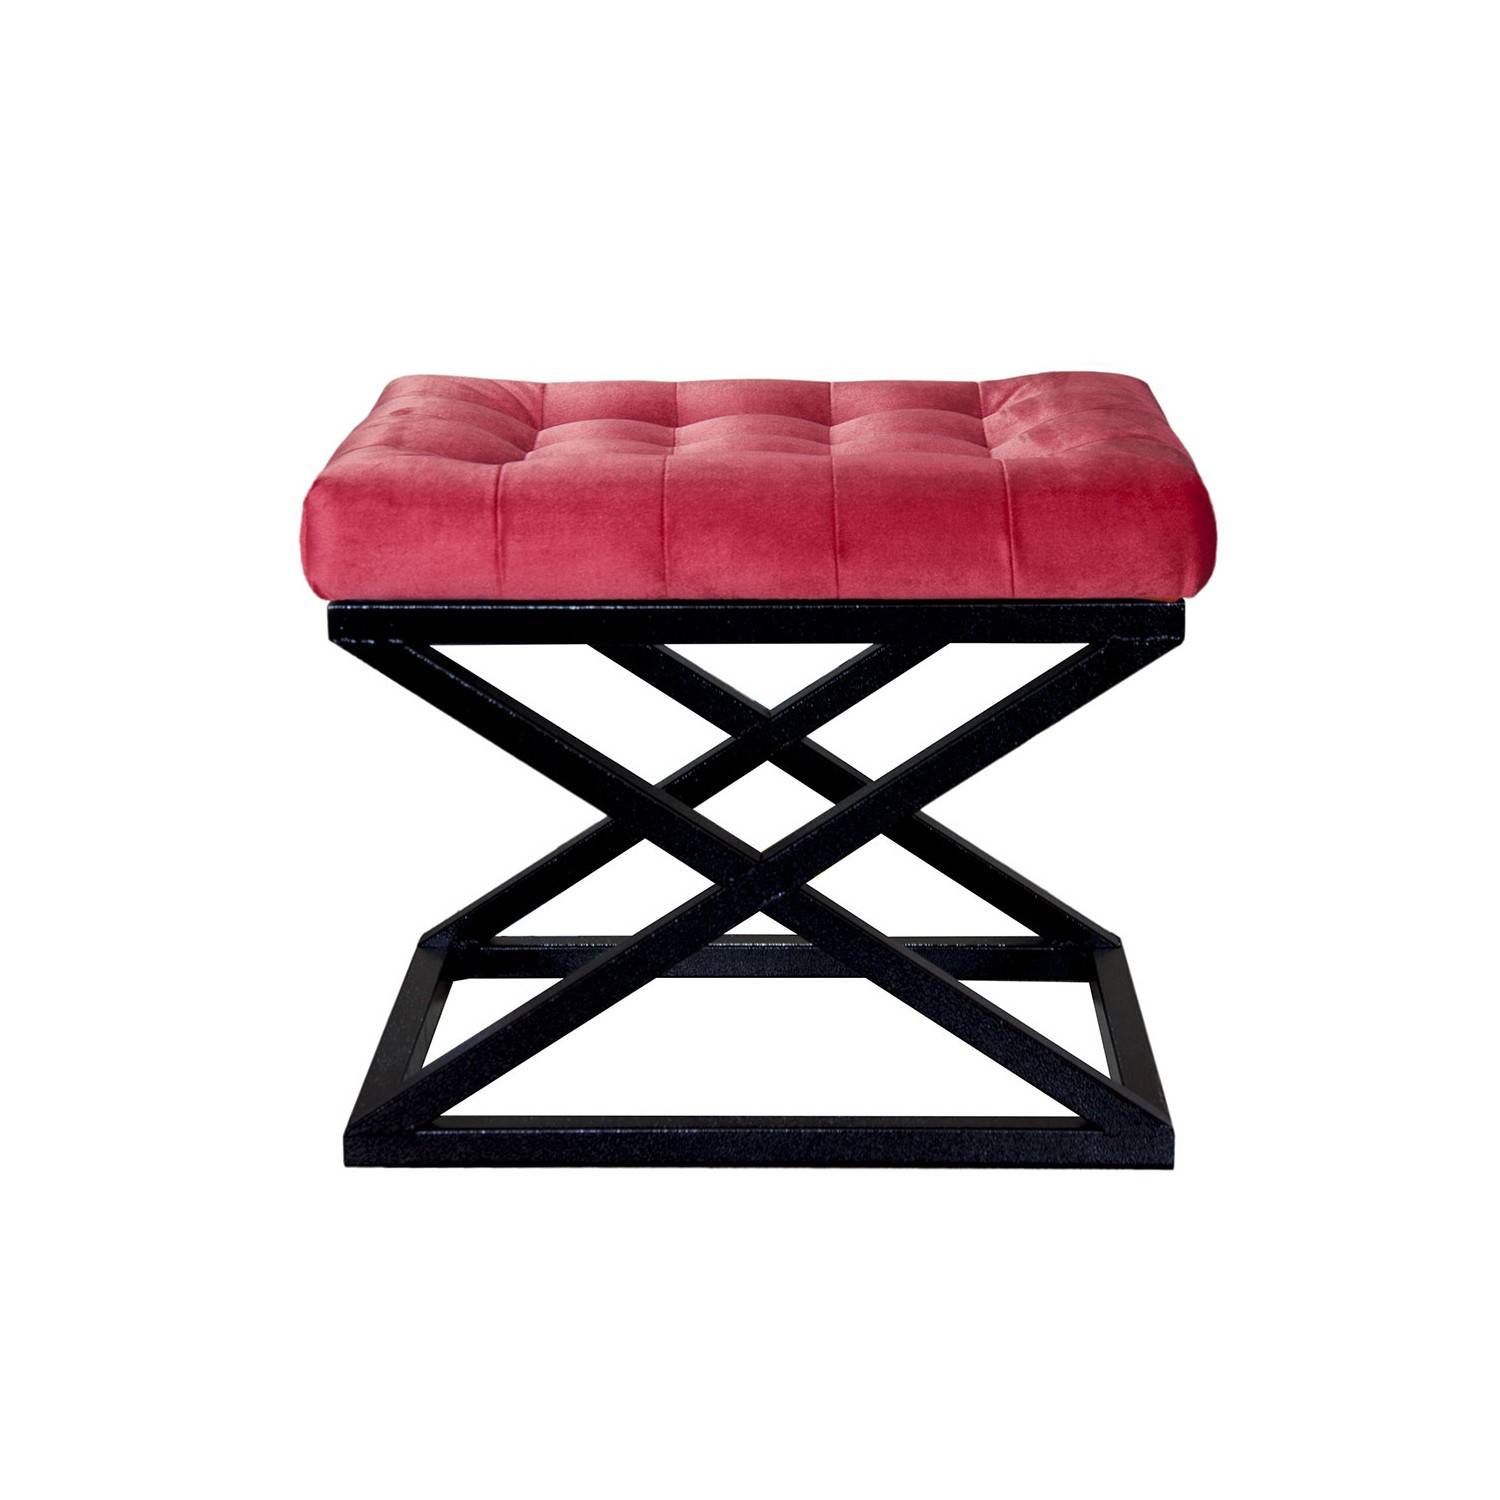 Taburete Ulad de metal negro y terciopelo rojo, asiento tapizado